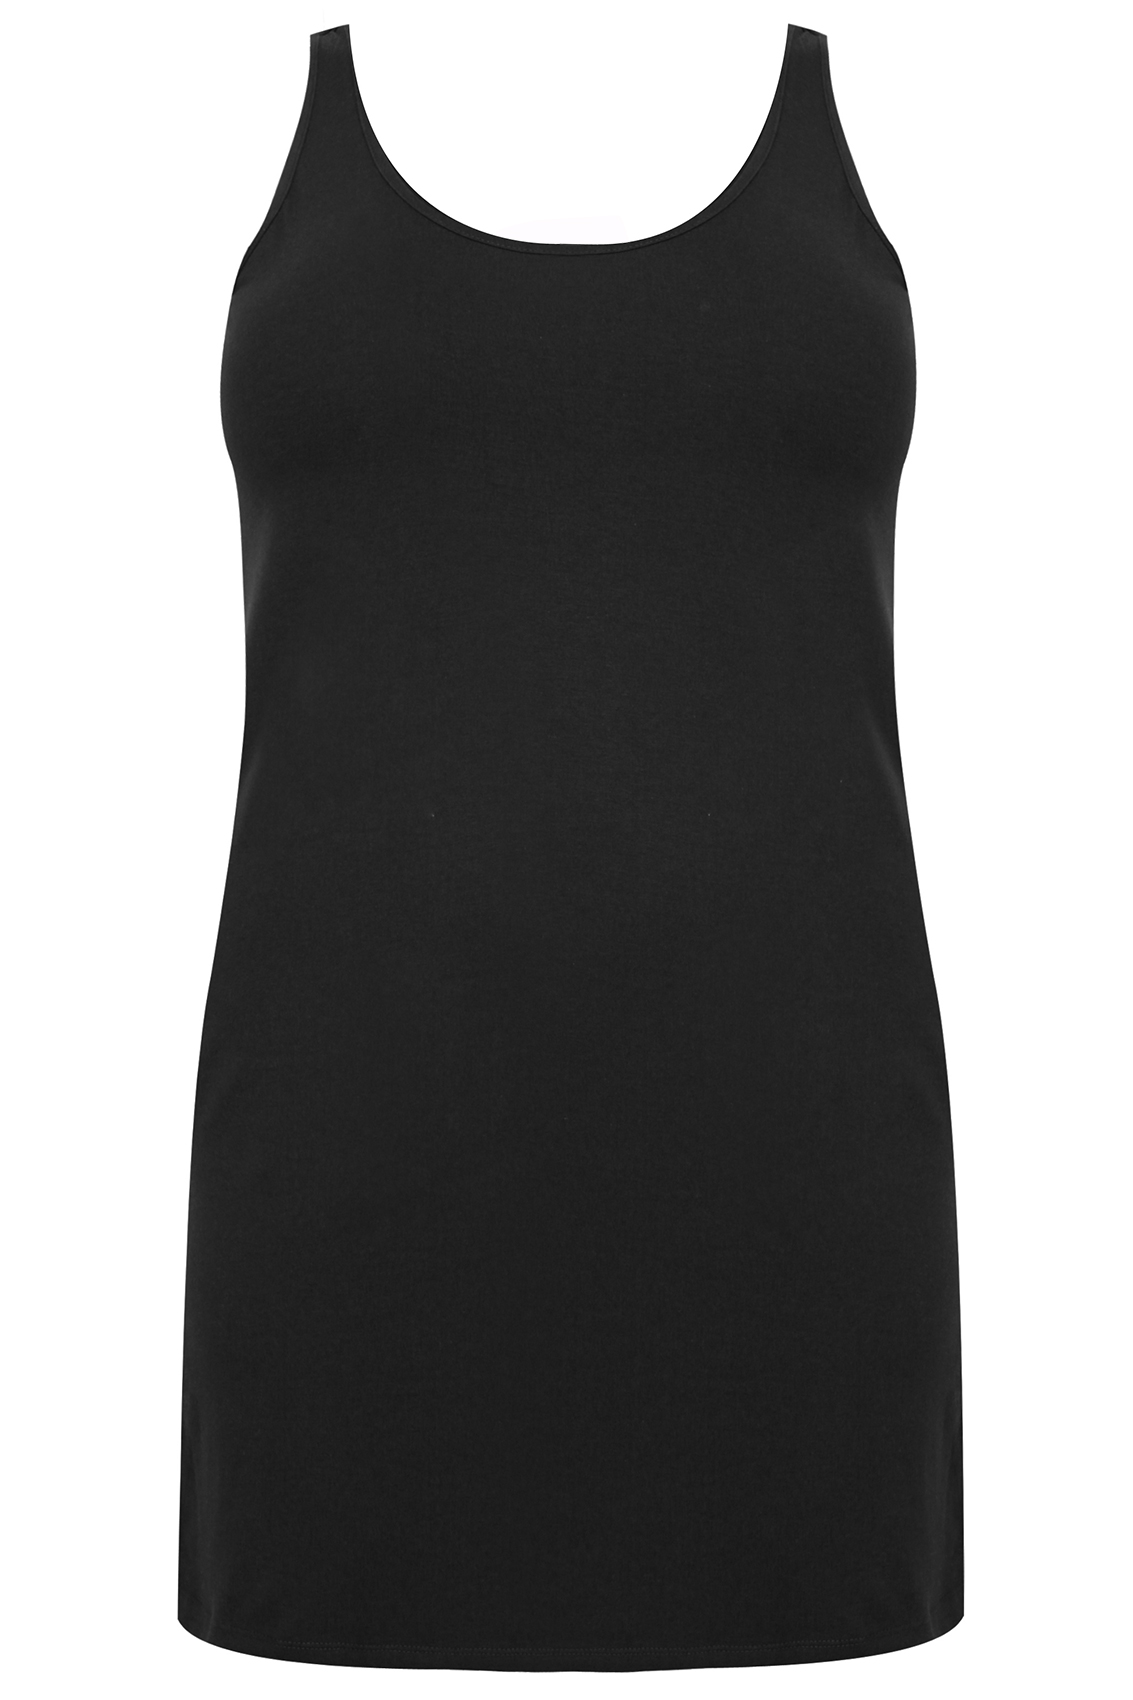 Black Longline Vest Top, Plus size 16 to 36